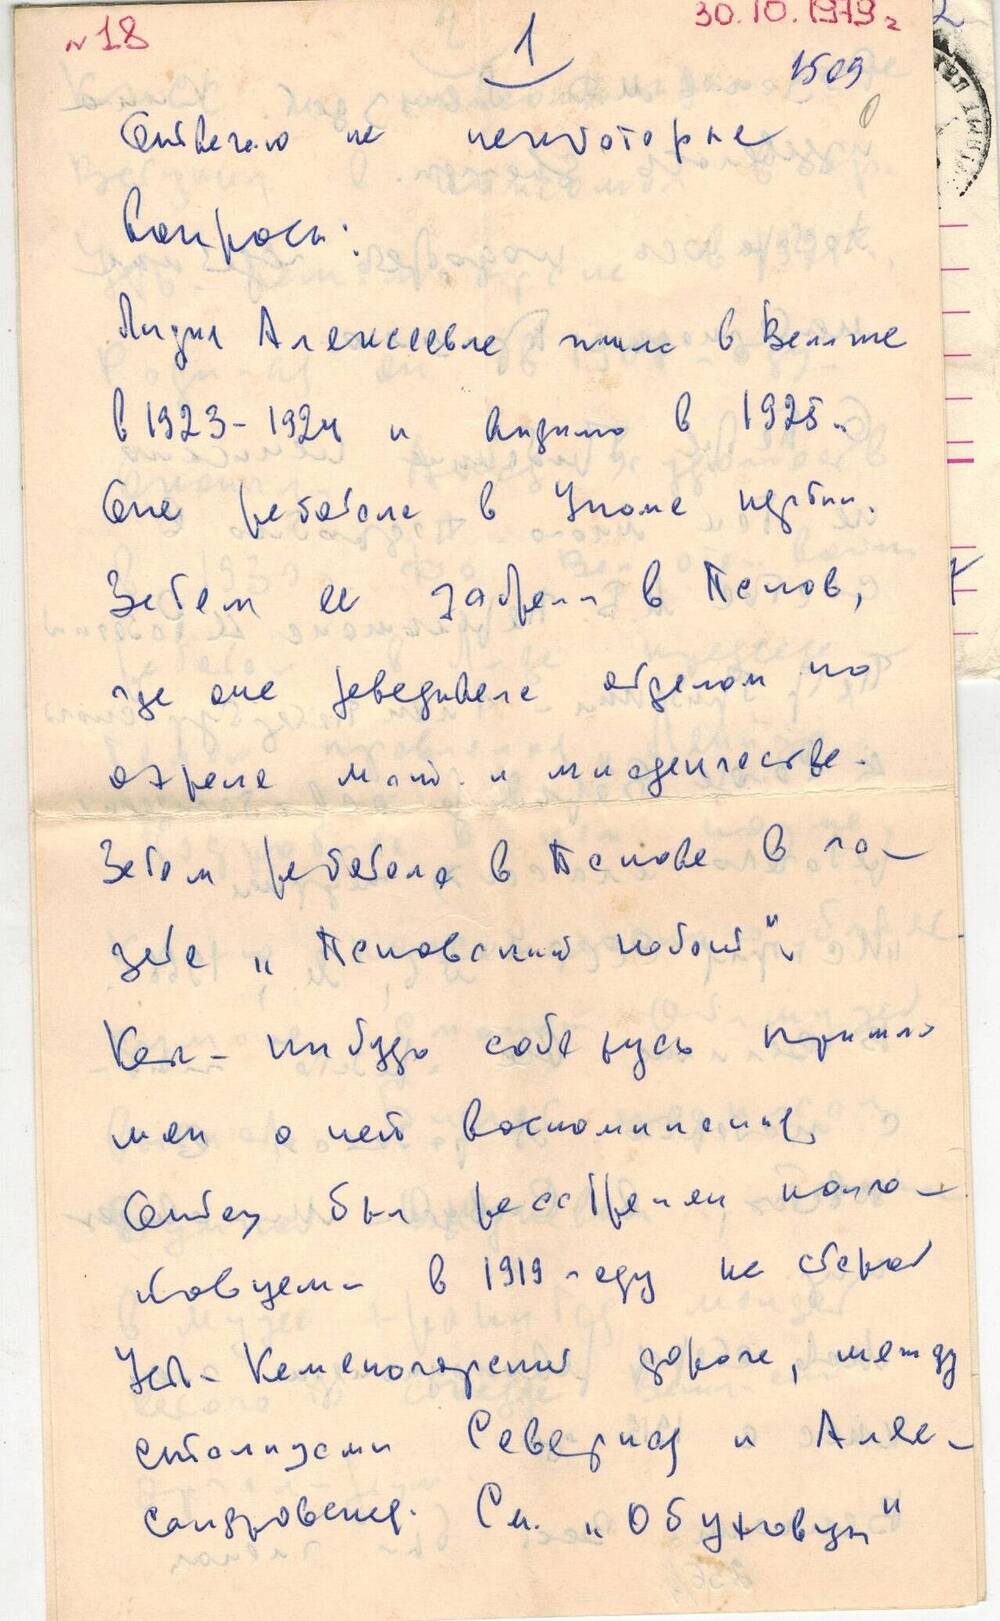 Письмо от Грибакина Д. Бордюкову А.Г 30.10.1979 г.